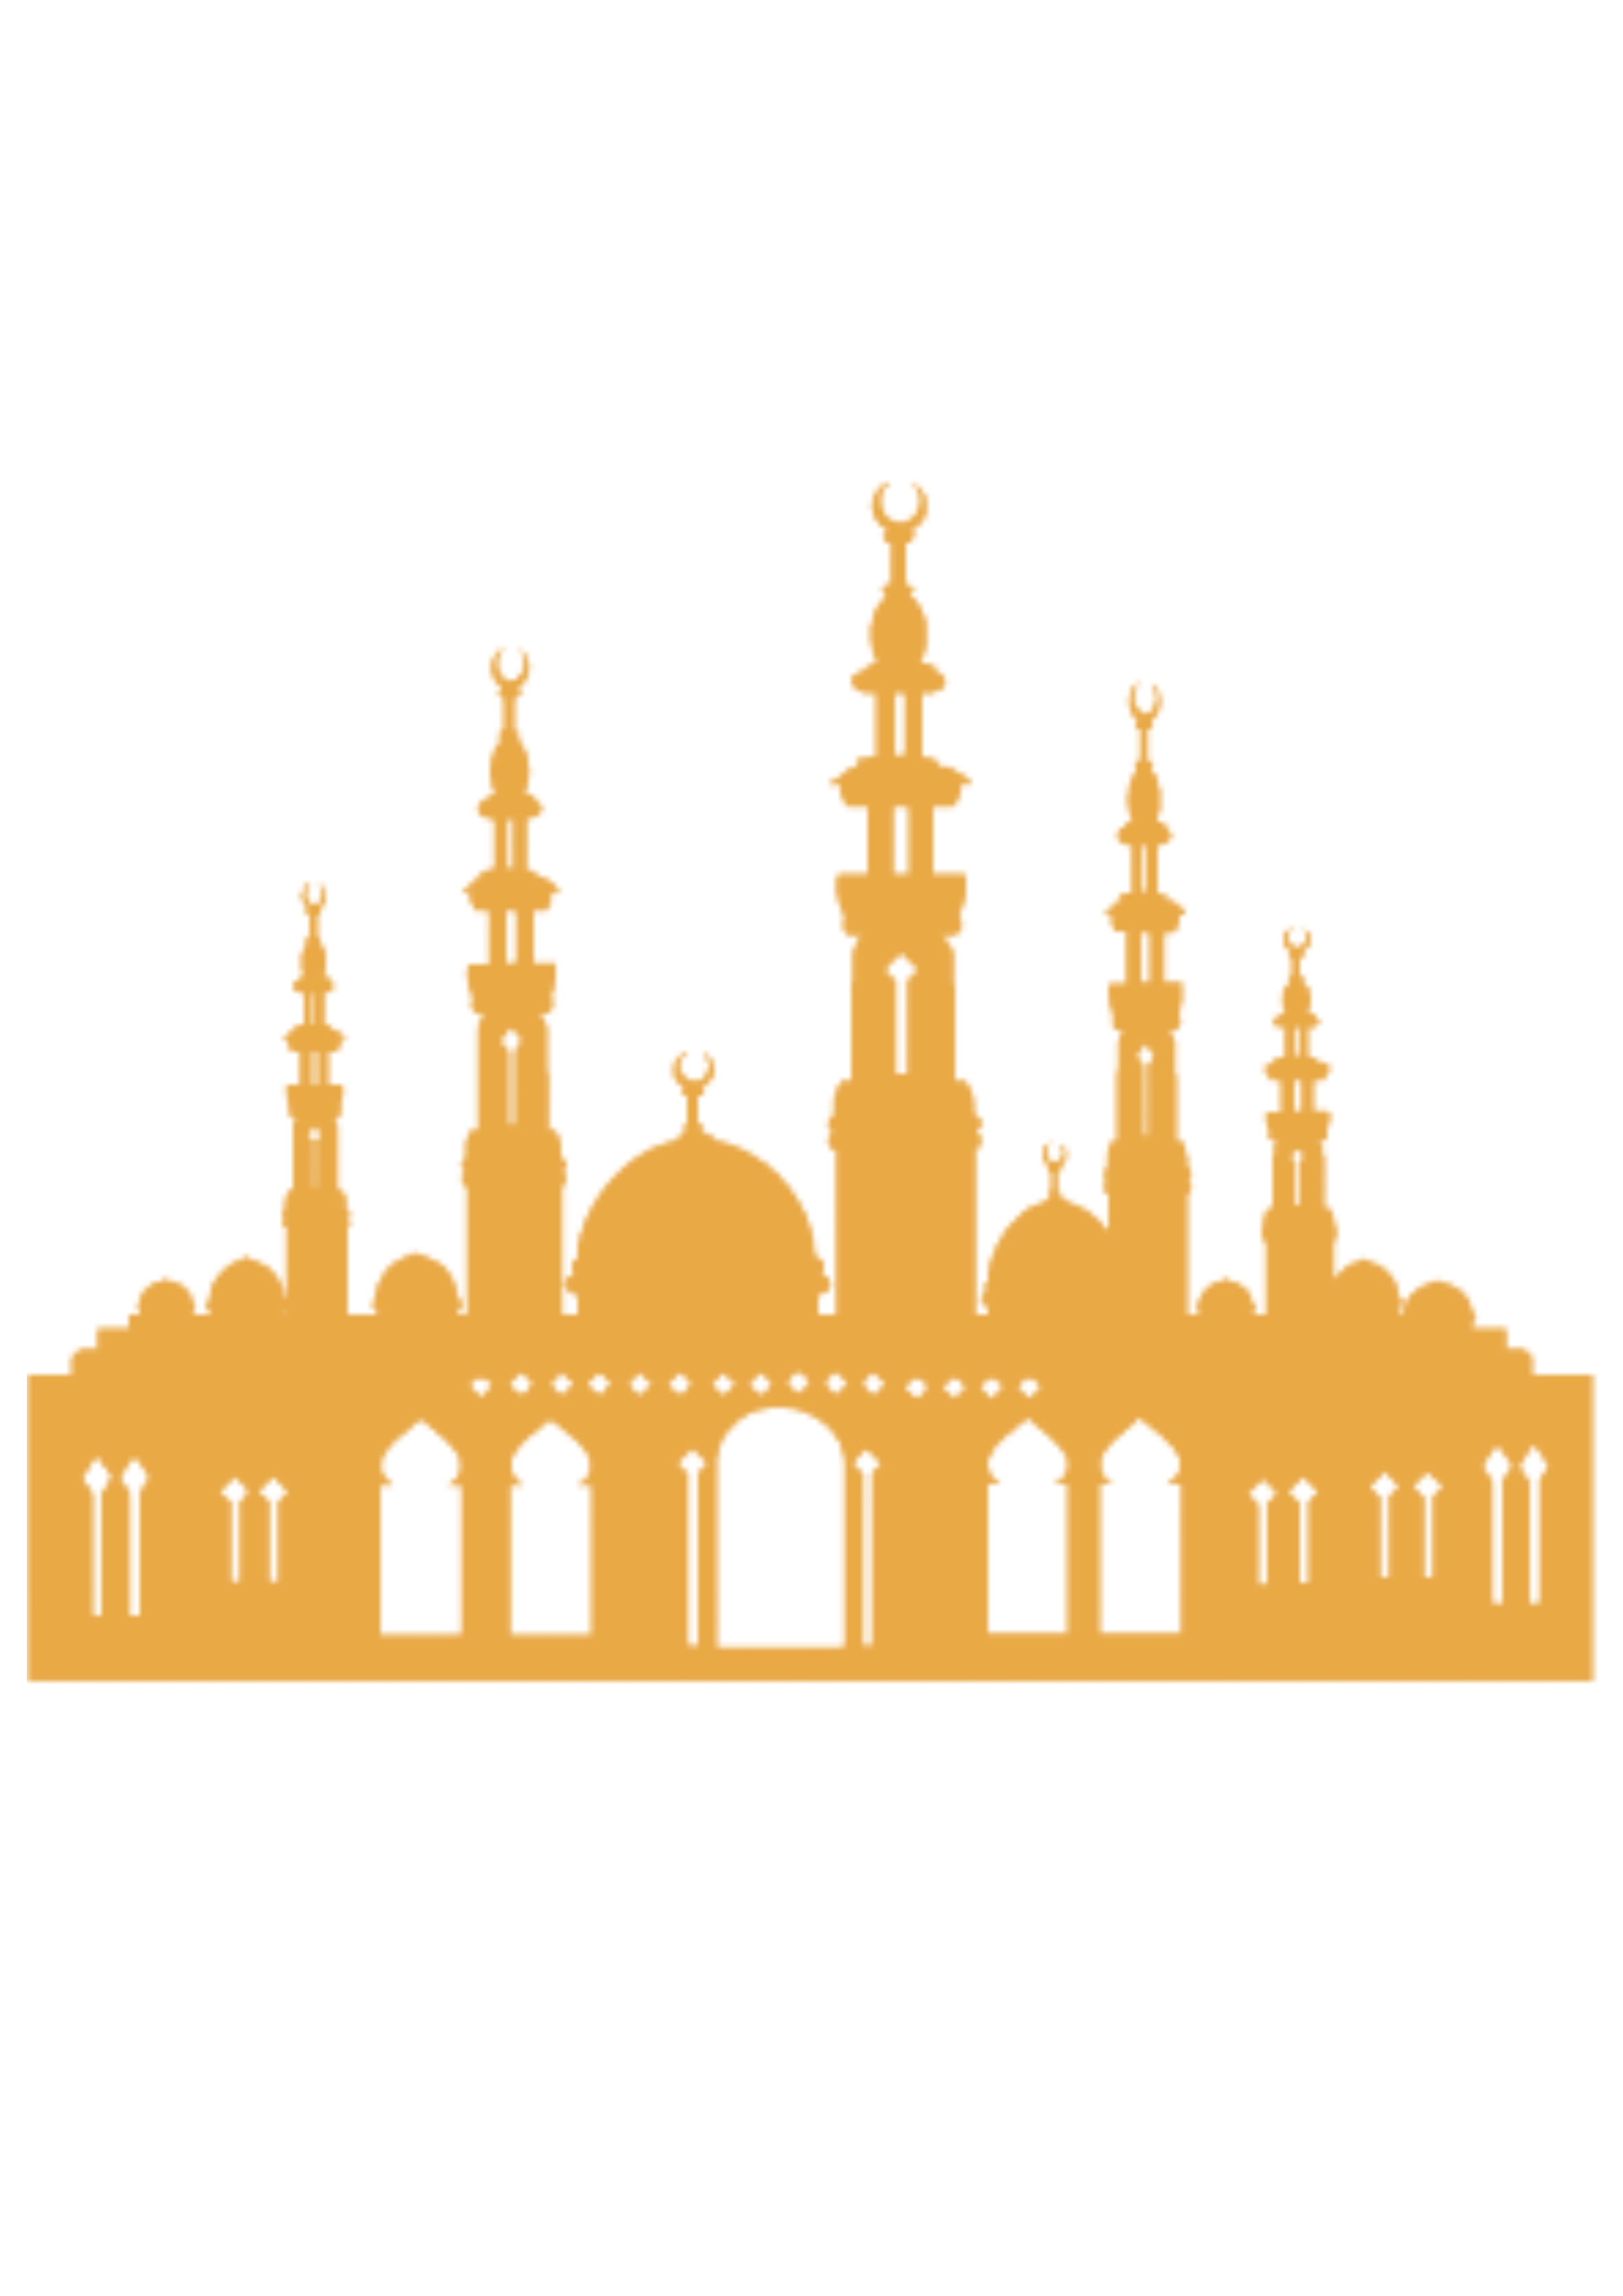 Mecca Silhouette Quran Mosque Church Islam Clipart